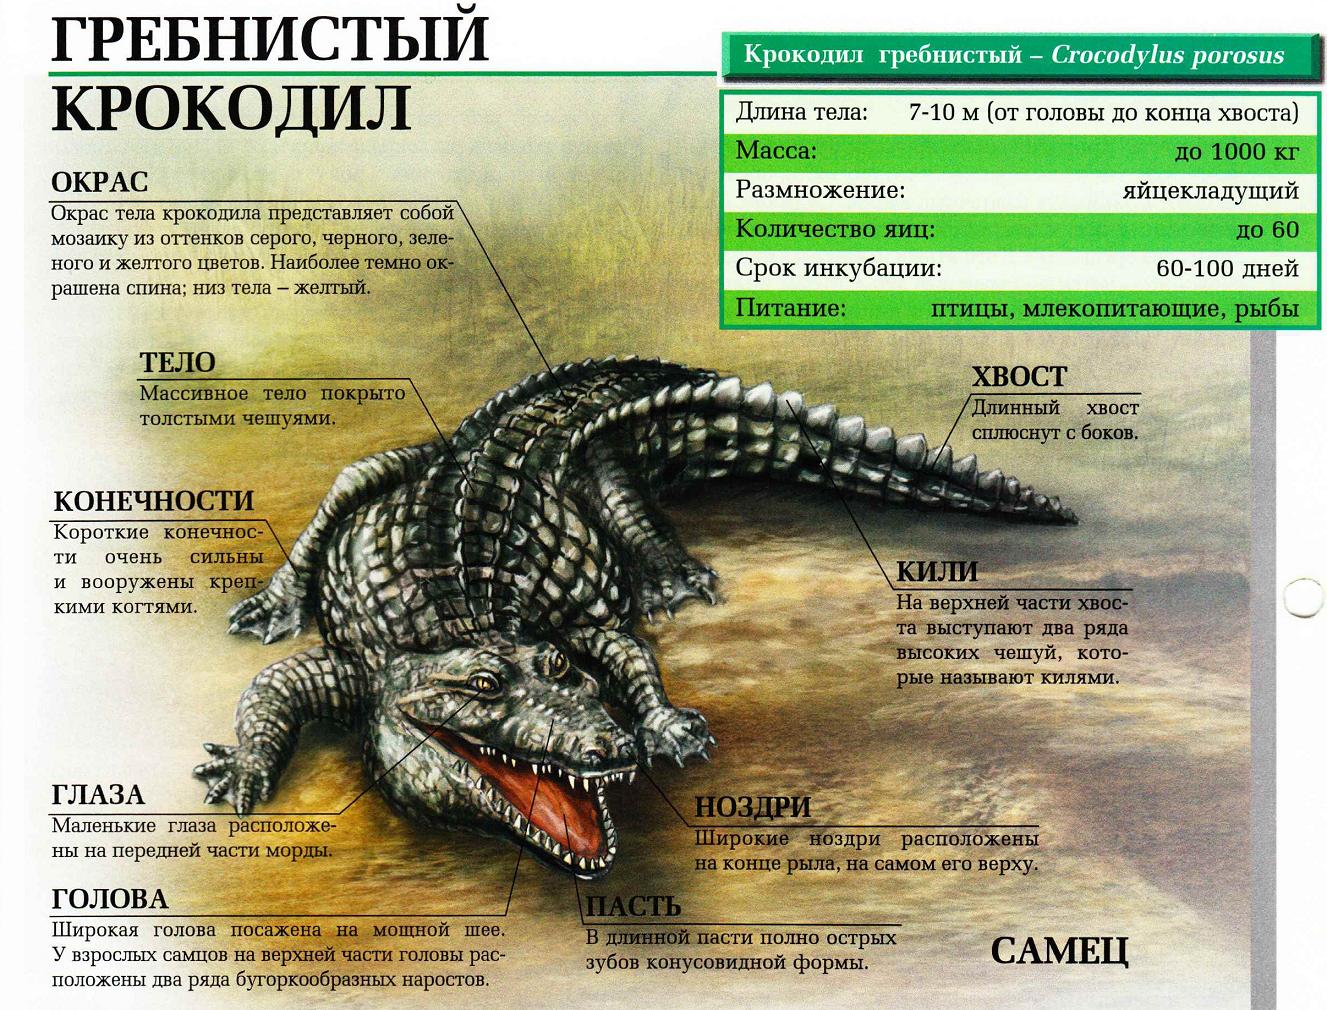 Гребнистый крокодил - самый большой крокодил в мире.:::Гребнистый крокодил.